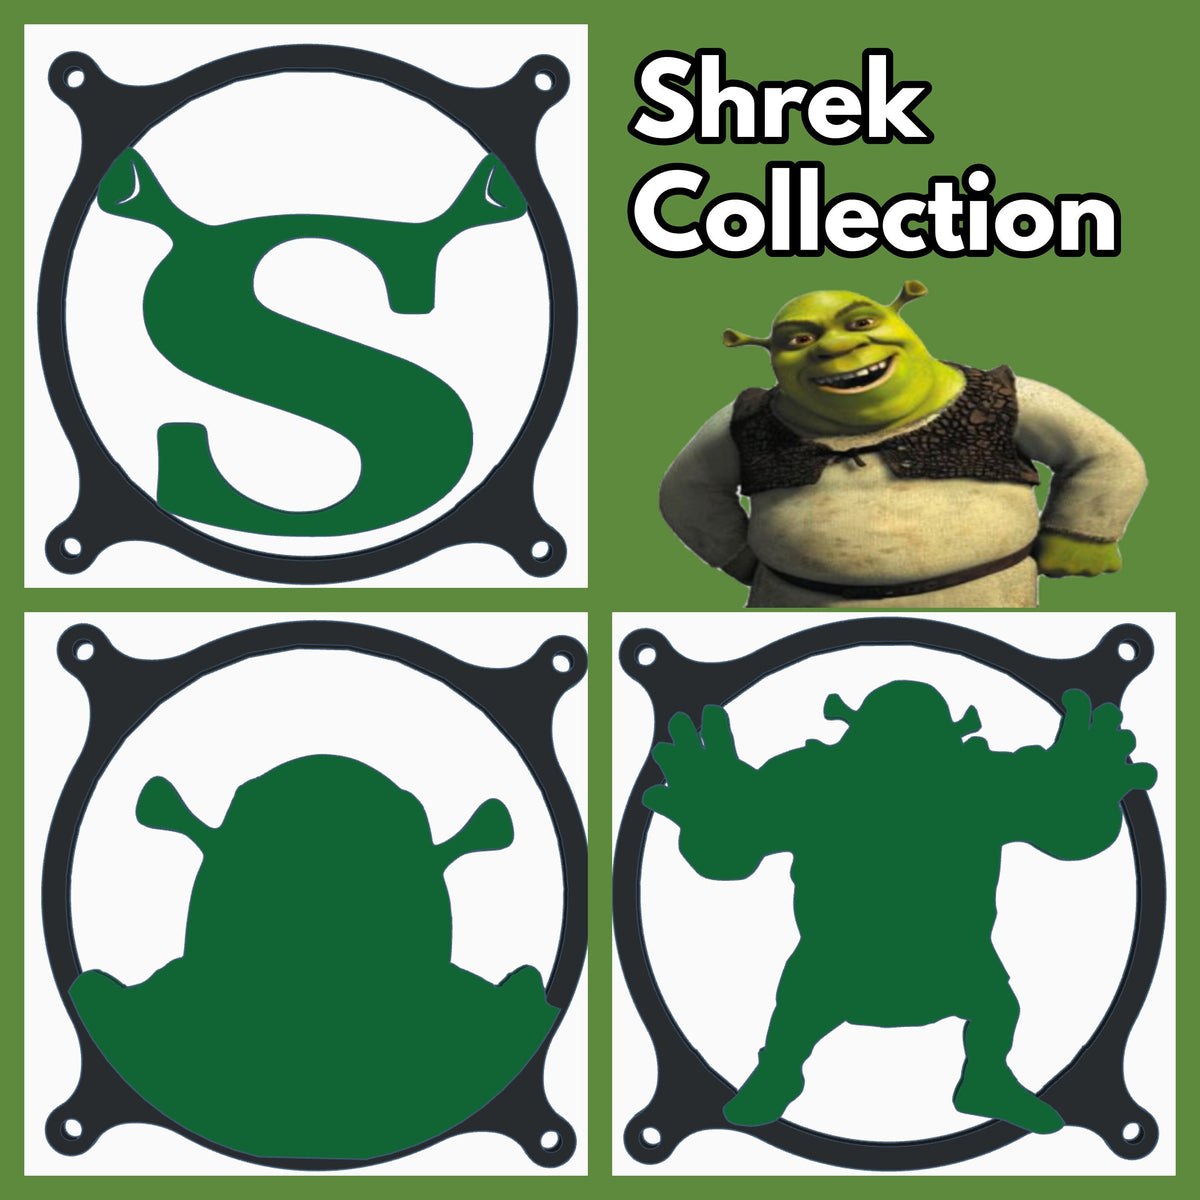 Shrek collection â sakurai armory